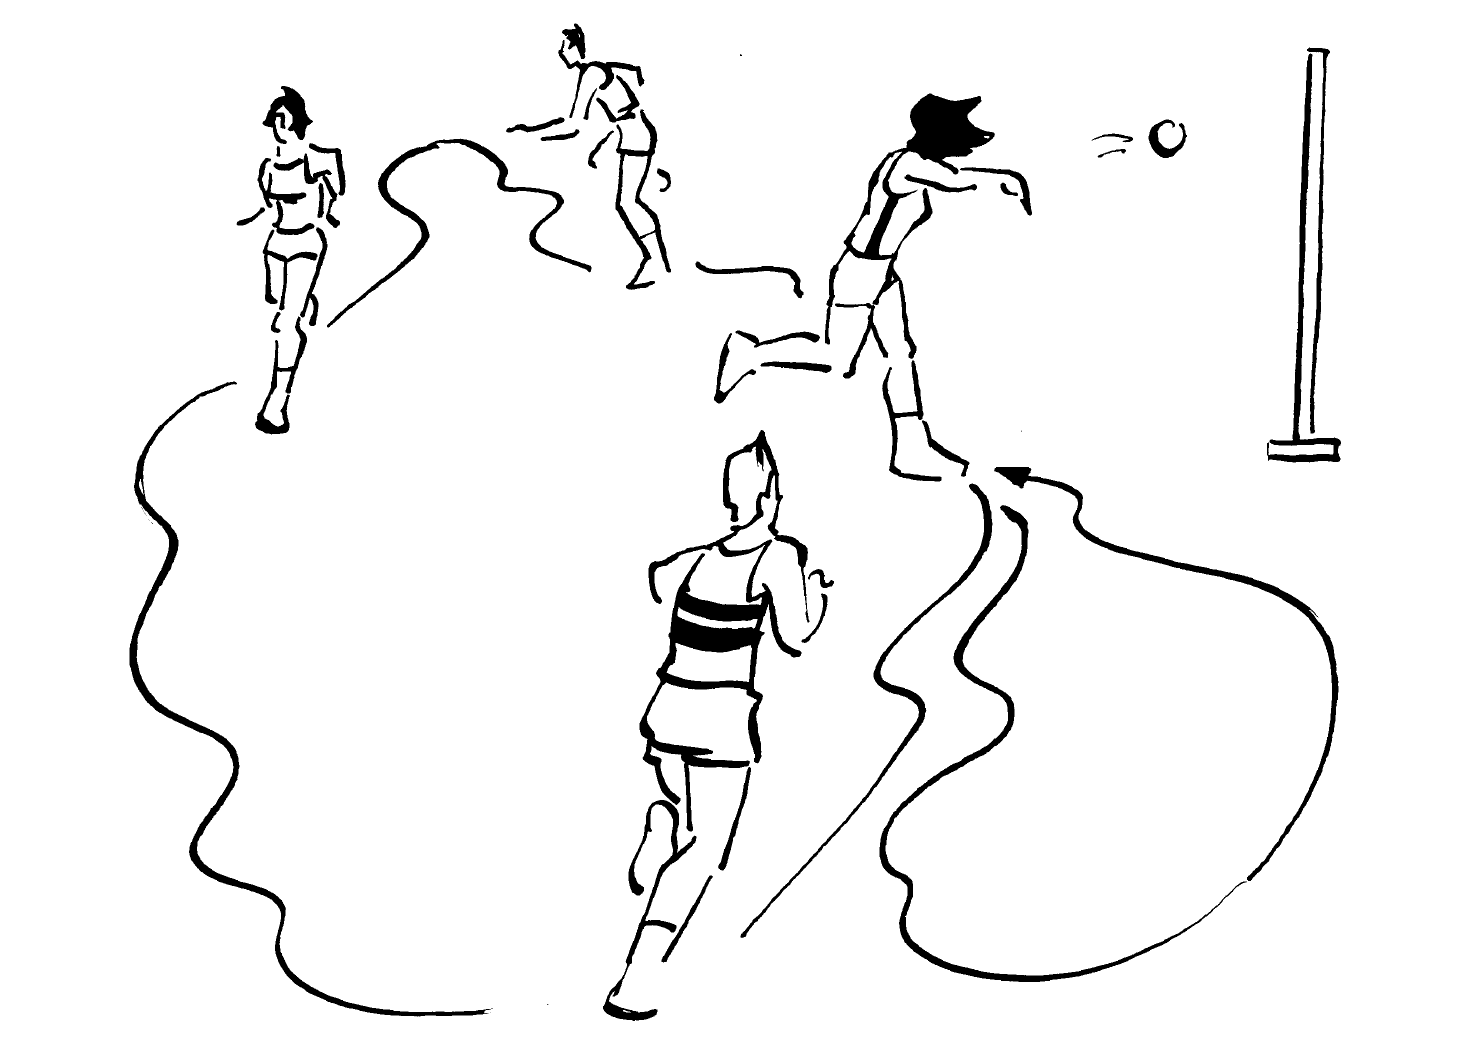 Zeichnungen: Jugendliche laufen im Kreis.